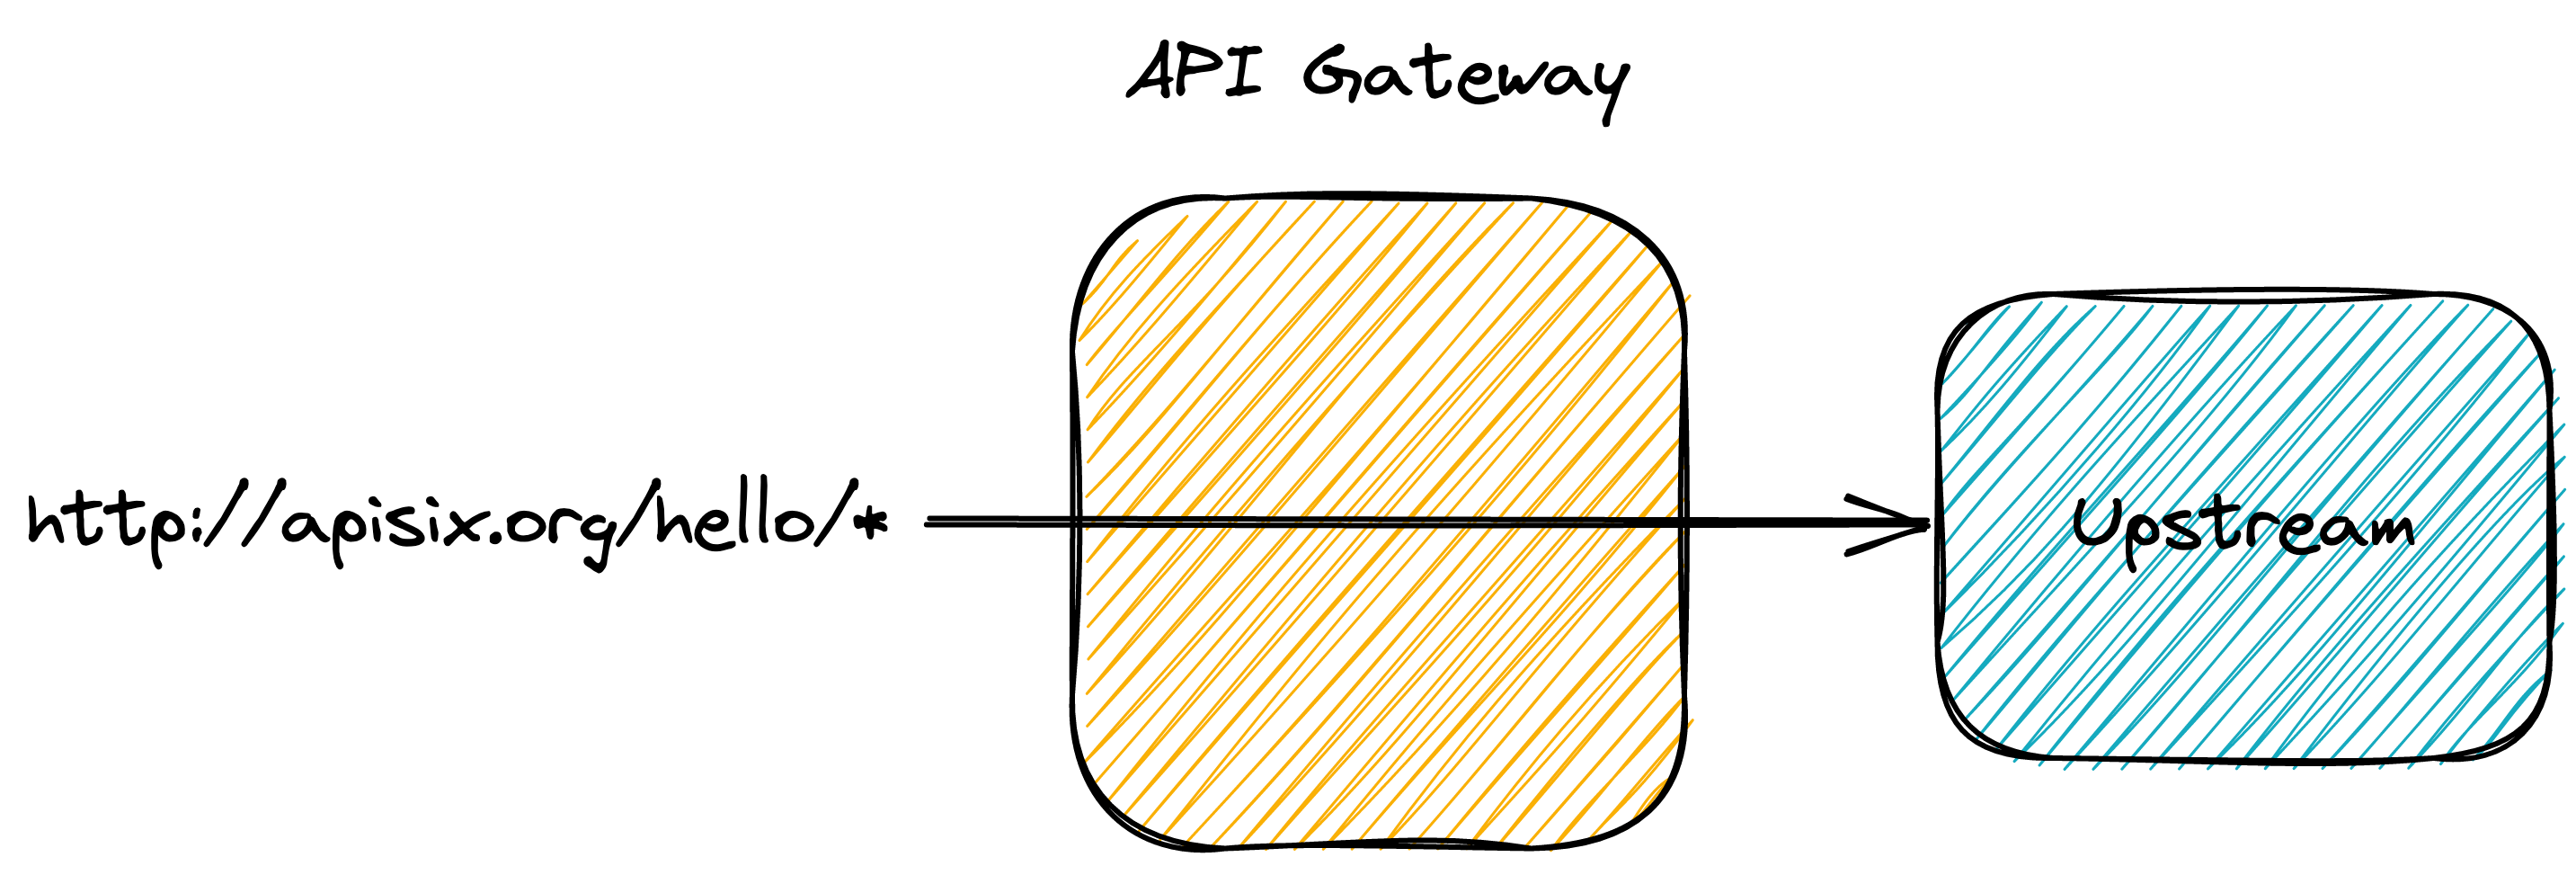 Use an API Gateway